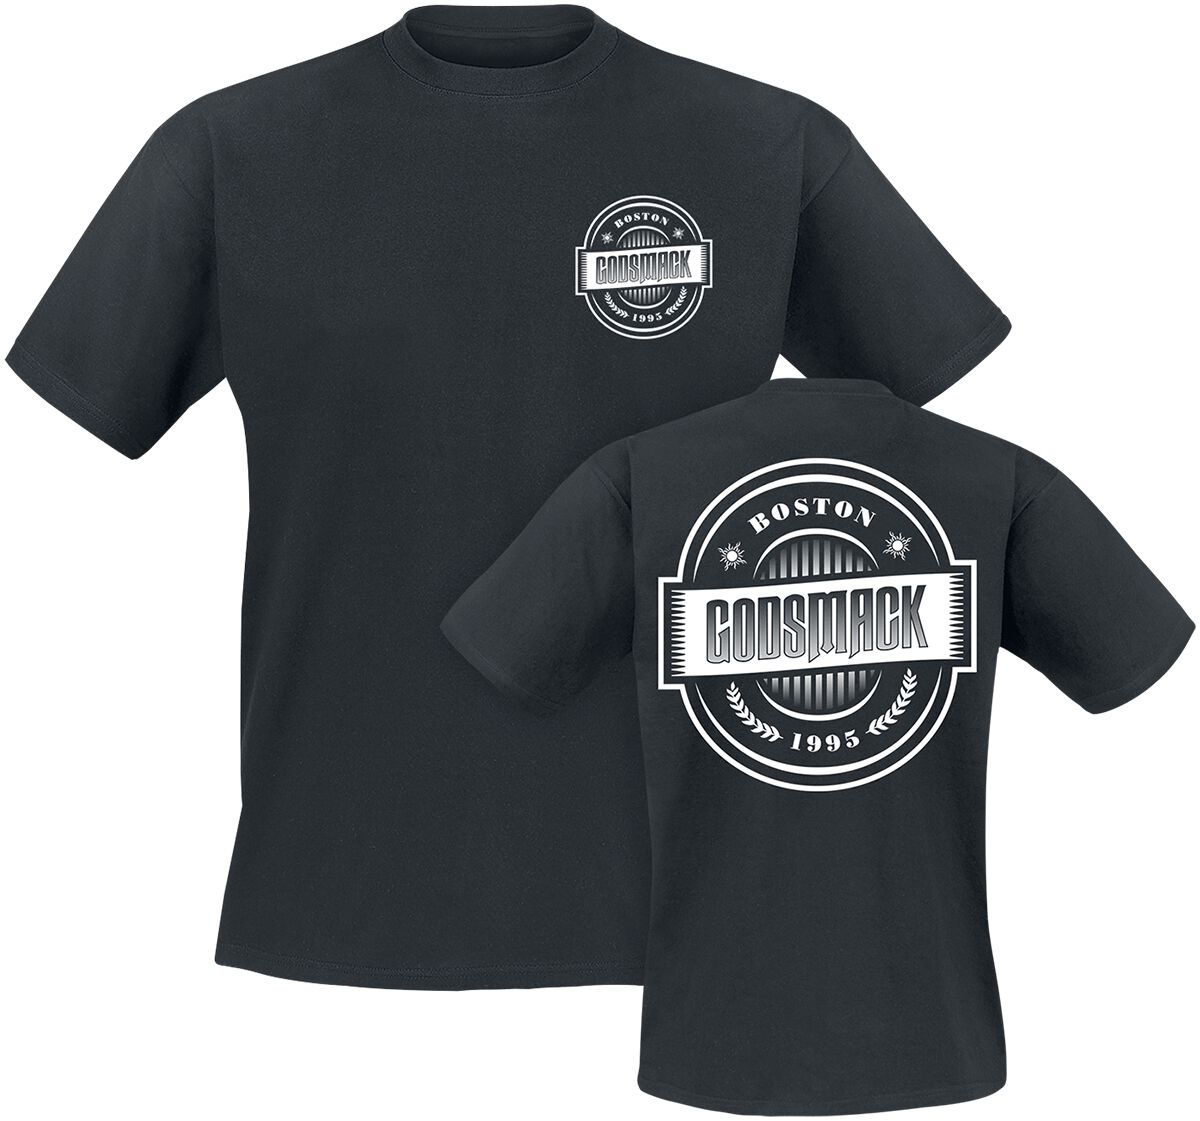 Godsmack T-Shirt - 1995 - S bis 3XL - für Männer - Größe M - schwarz  - Lizenziertes Merchandise!